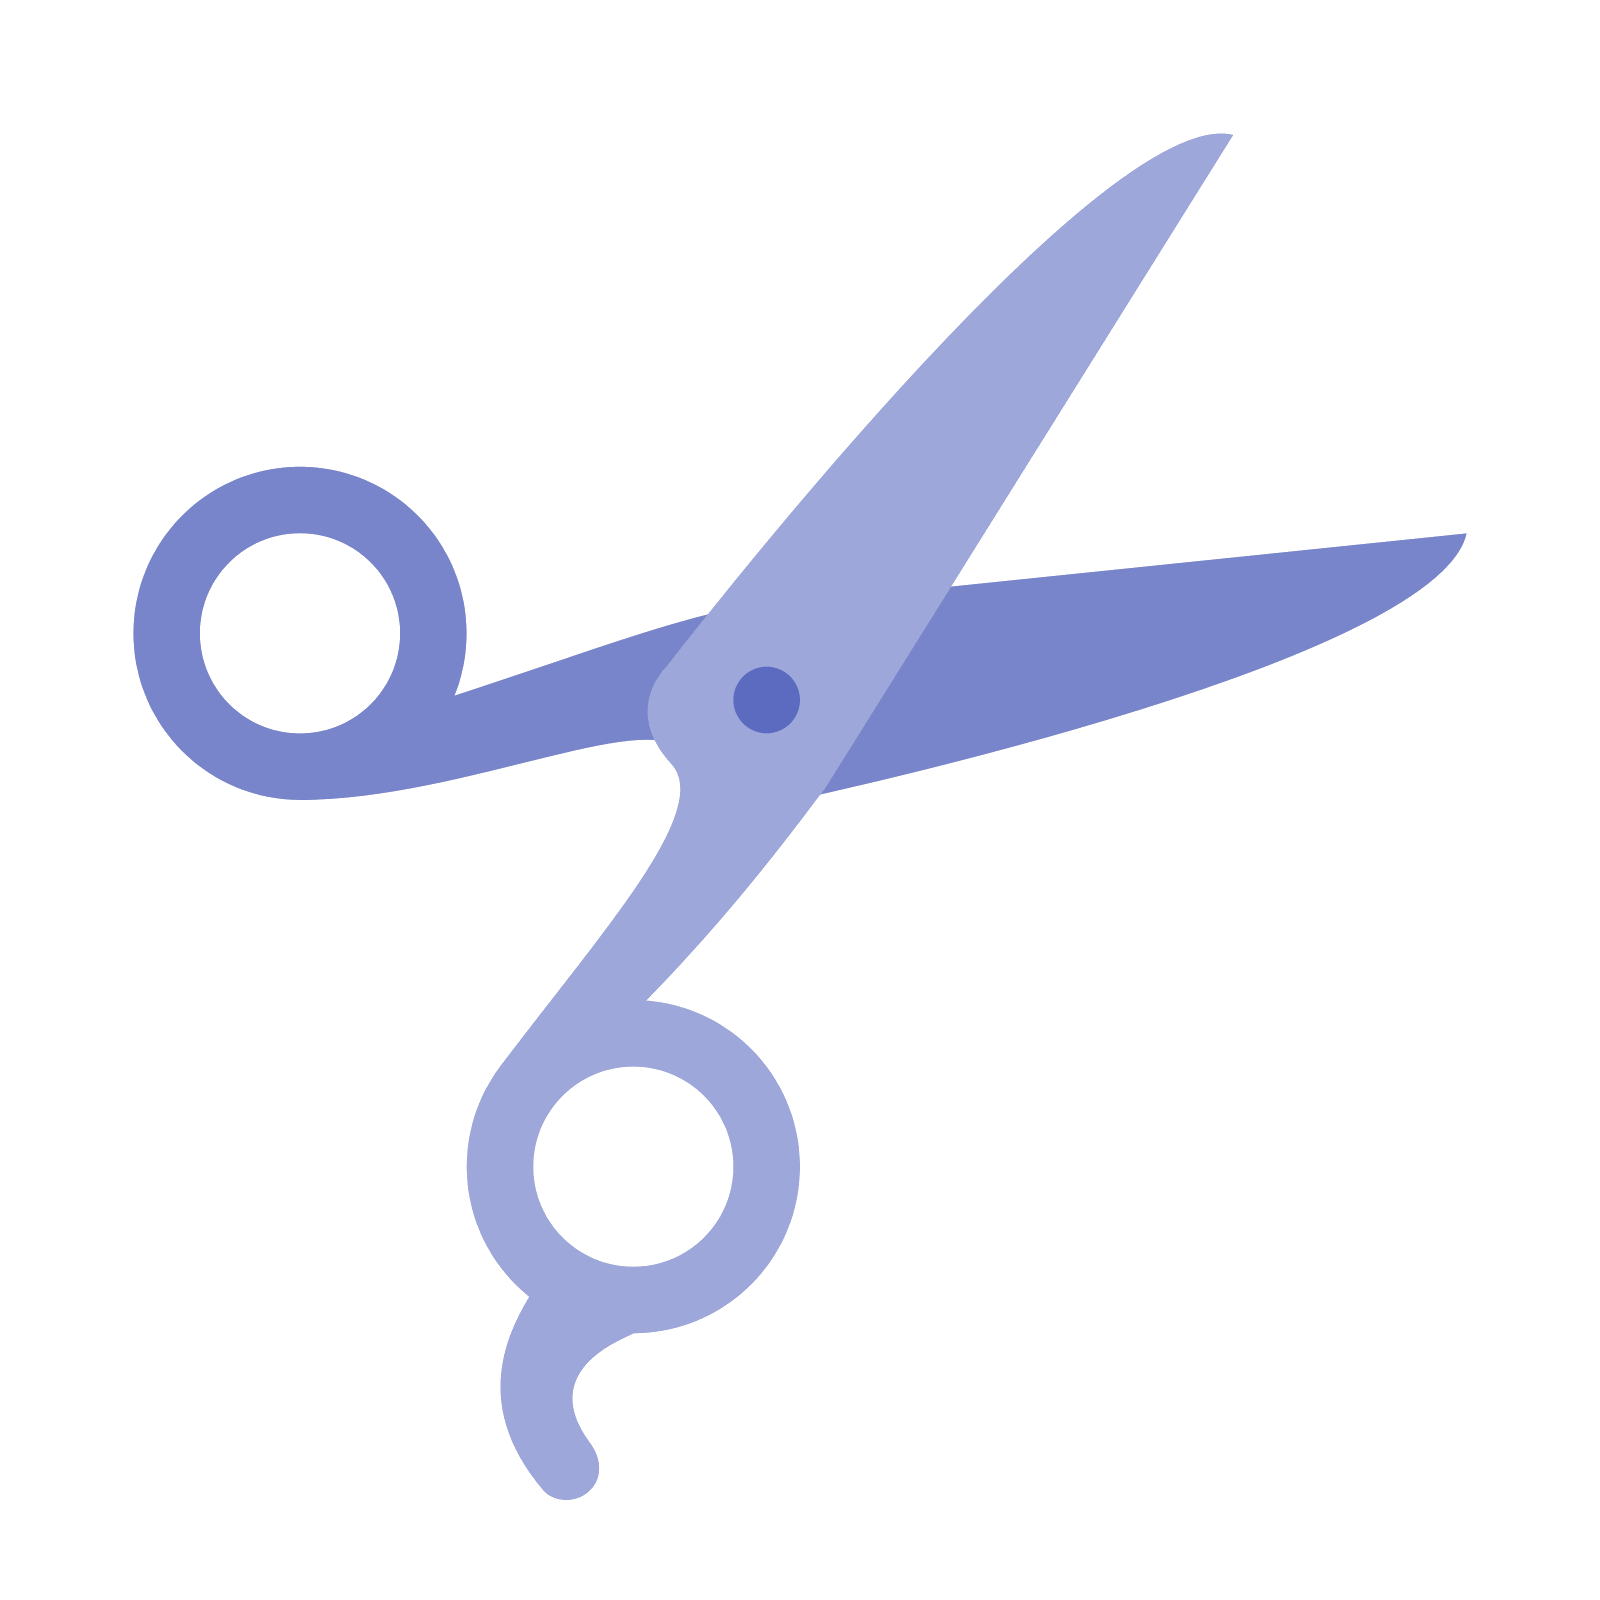 Clipart scissors haircutting. Computer icons hair cutting